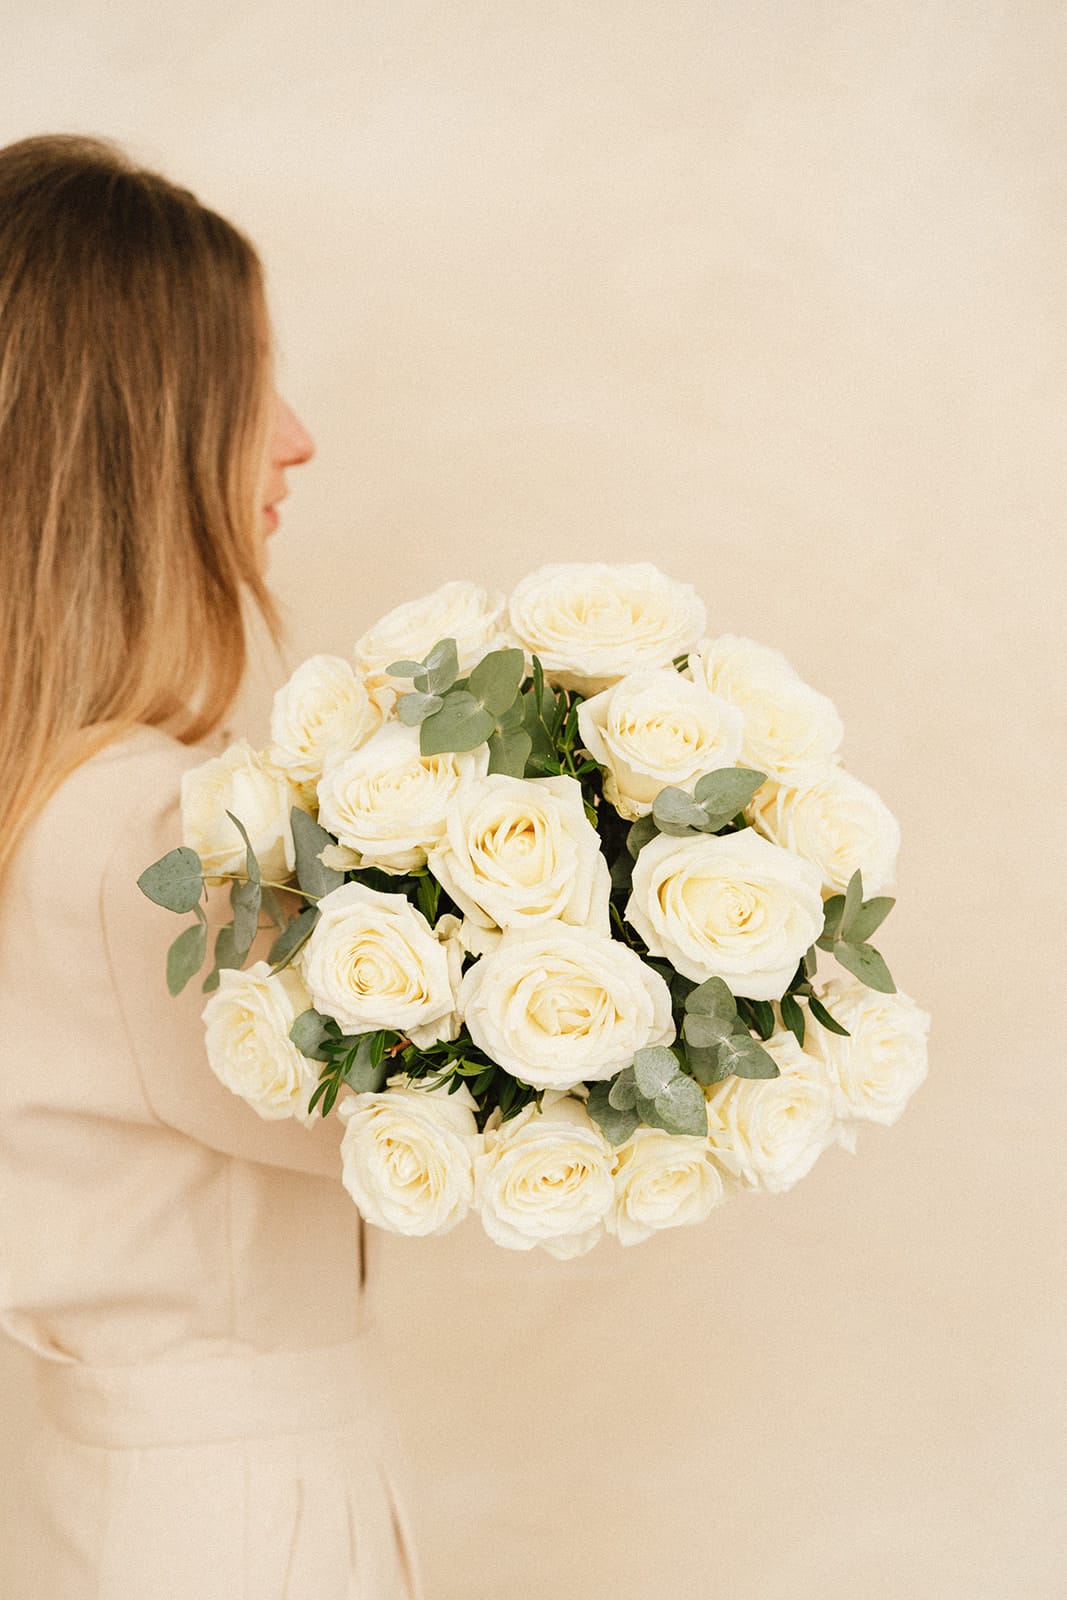 Kanel-Blumenstrauß-weiße-Rose-schweizerische-Lieferung-Rena